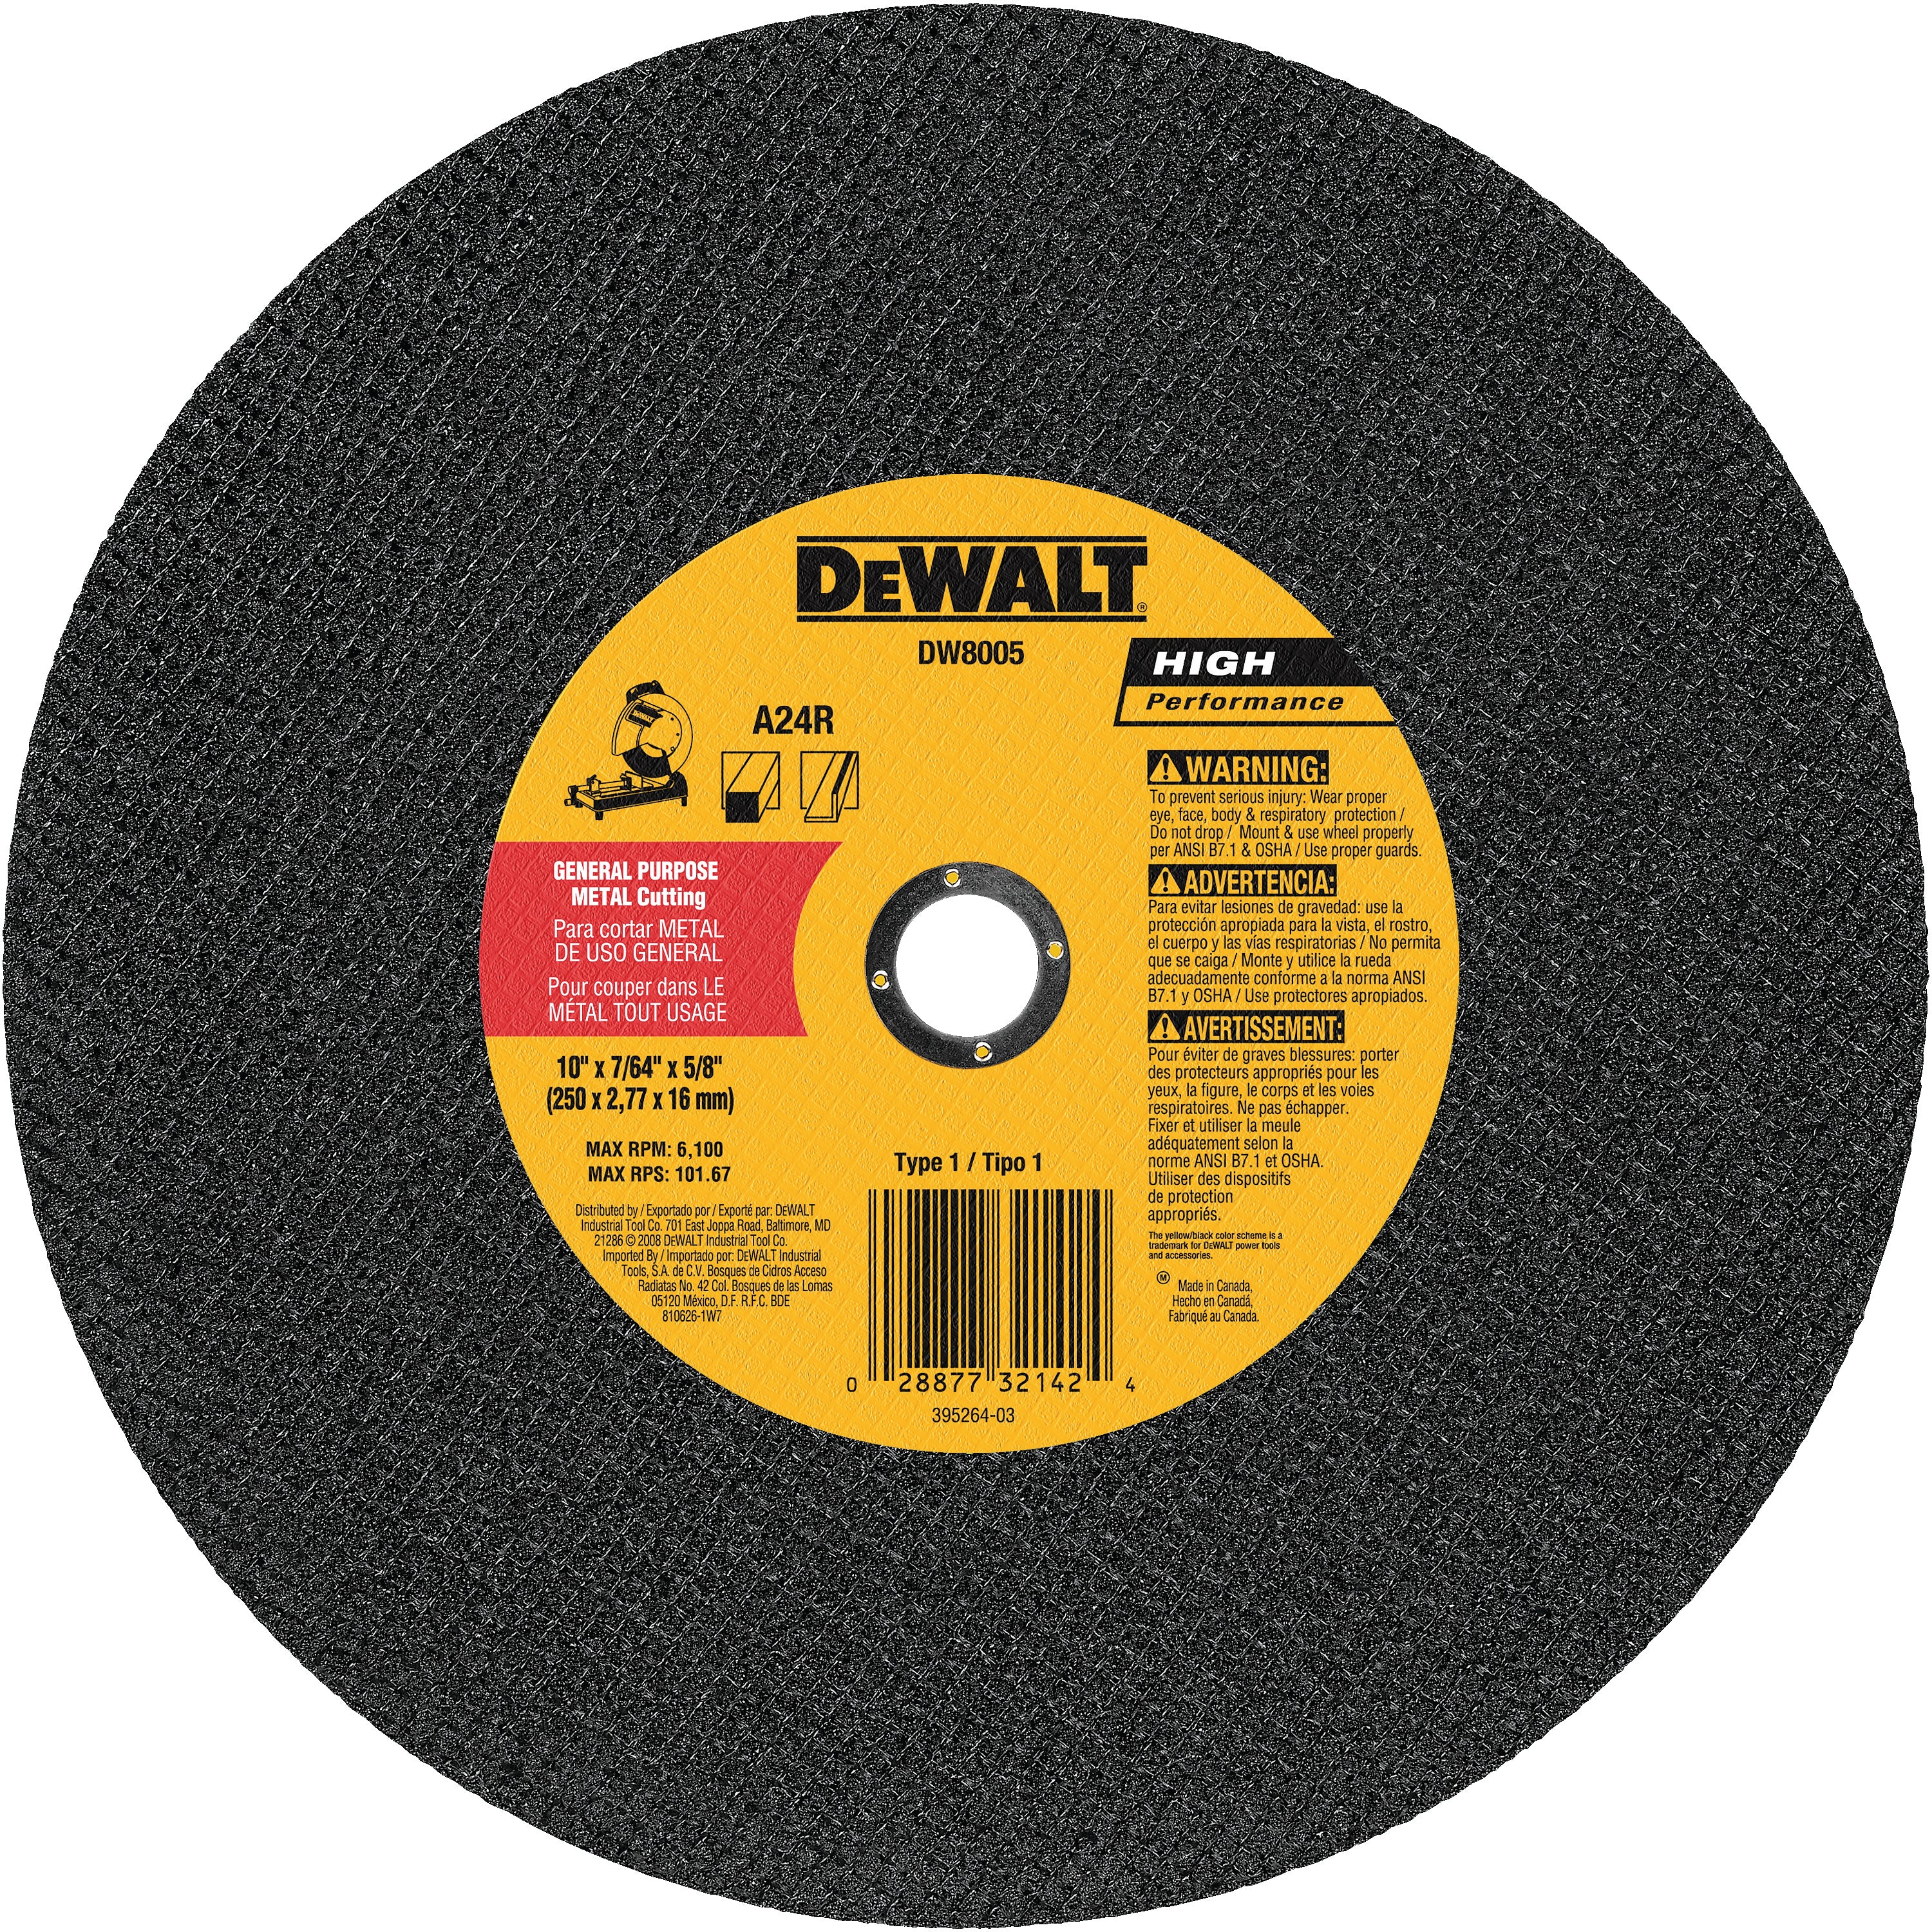 DEWALT DW8001 General Purpose Chop Saw Wheel, 14-Inch X 7/64-Inch X 1-Inch - wise-line-tools